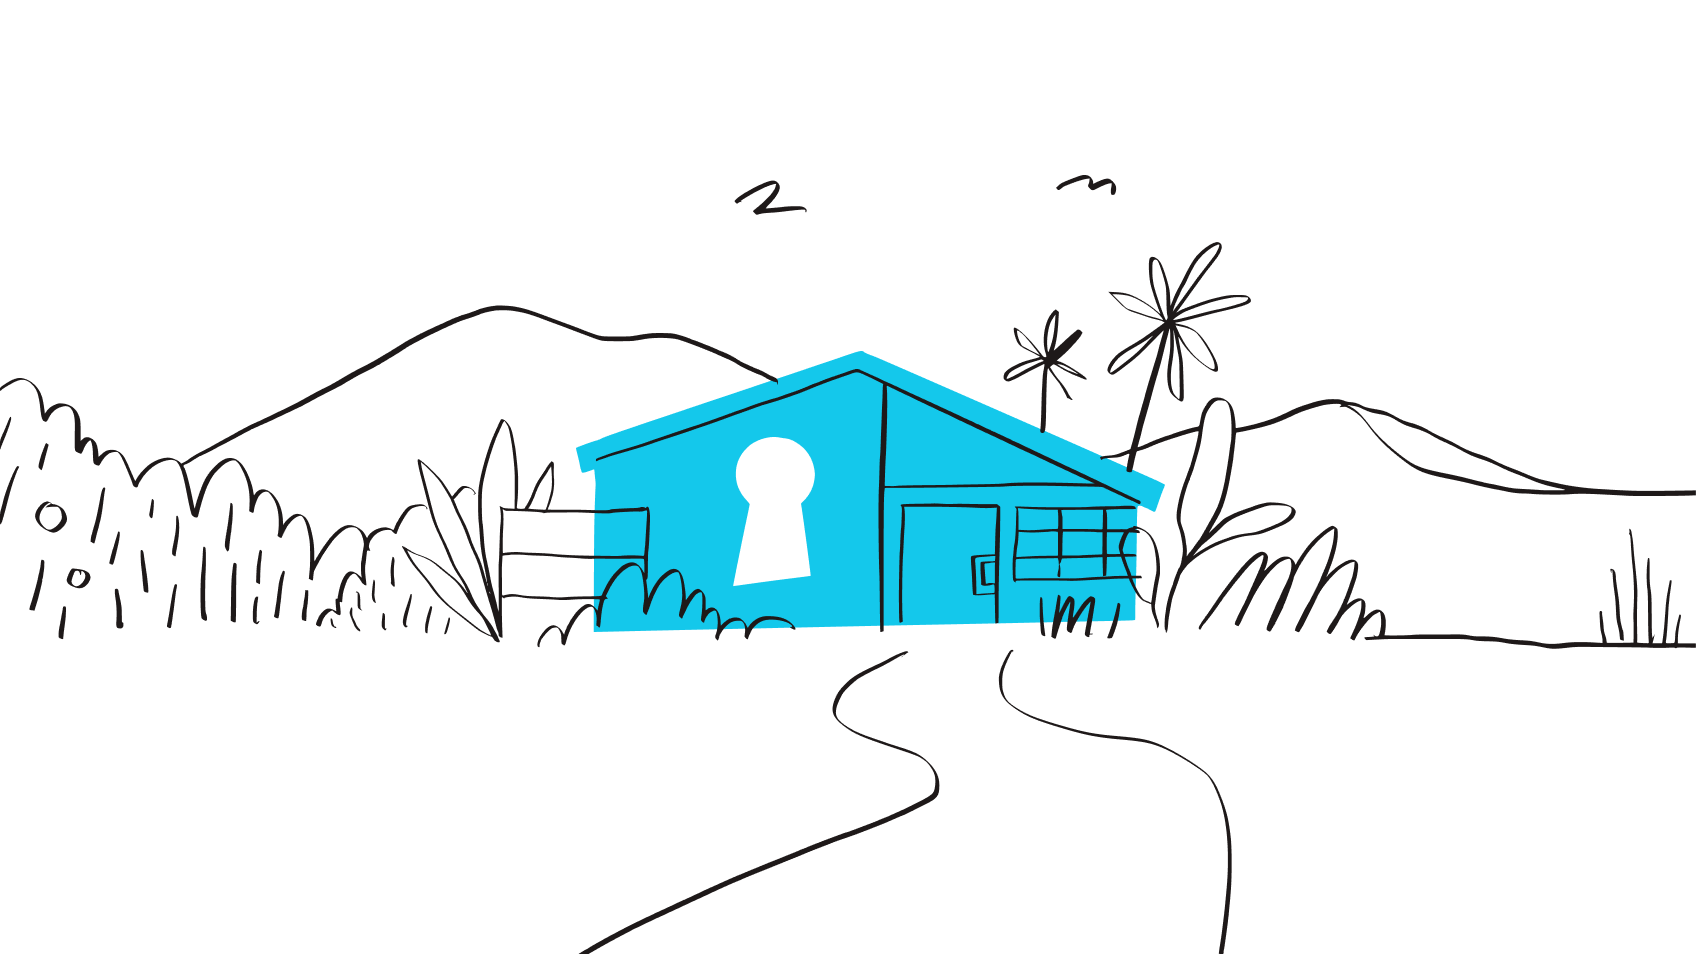 Ilustracja przedstawiająca dom z kłódką, reprezentującą zabezpieczenie wynikające z posiadania silnego hasła.